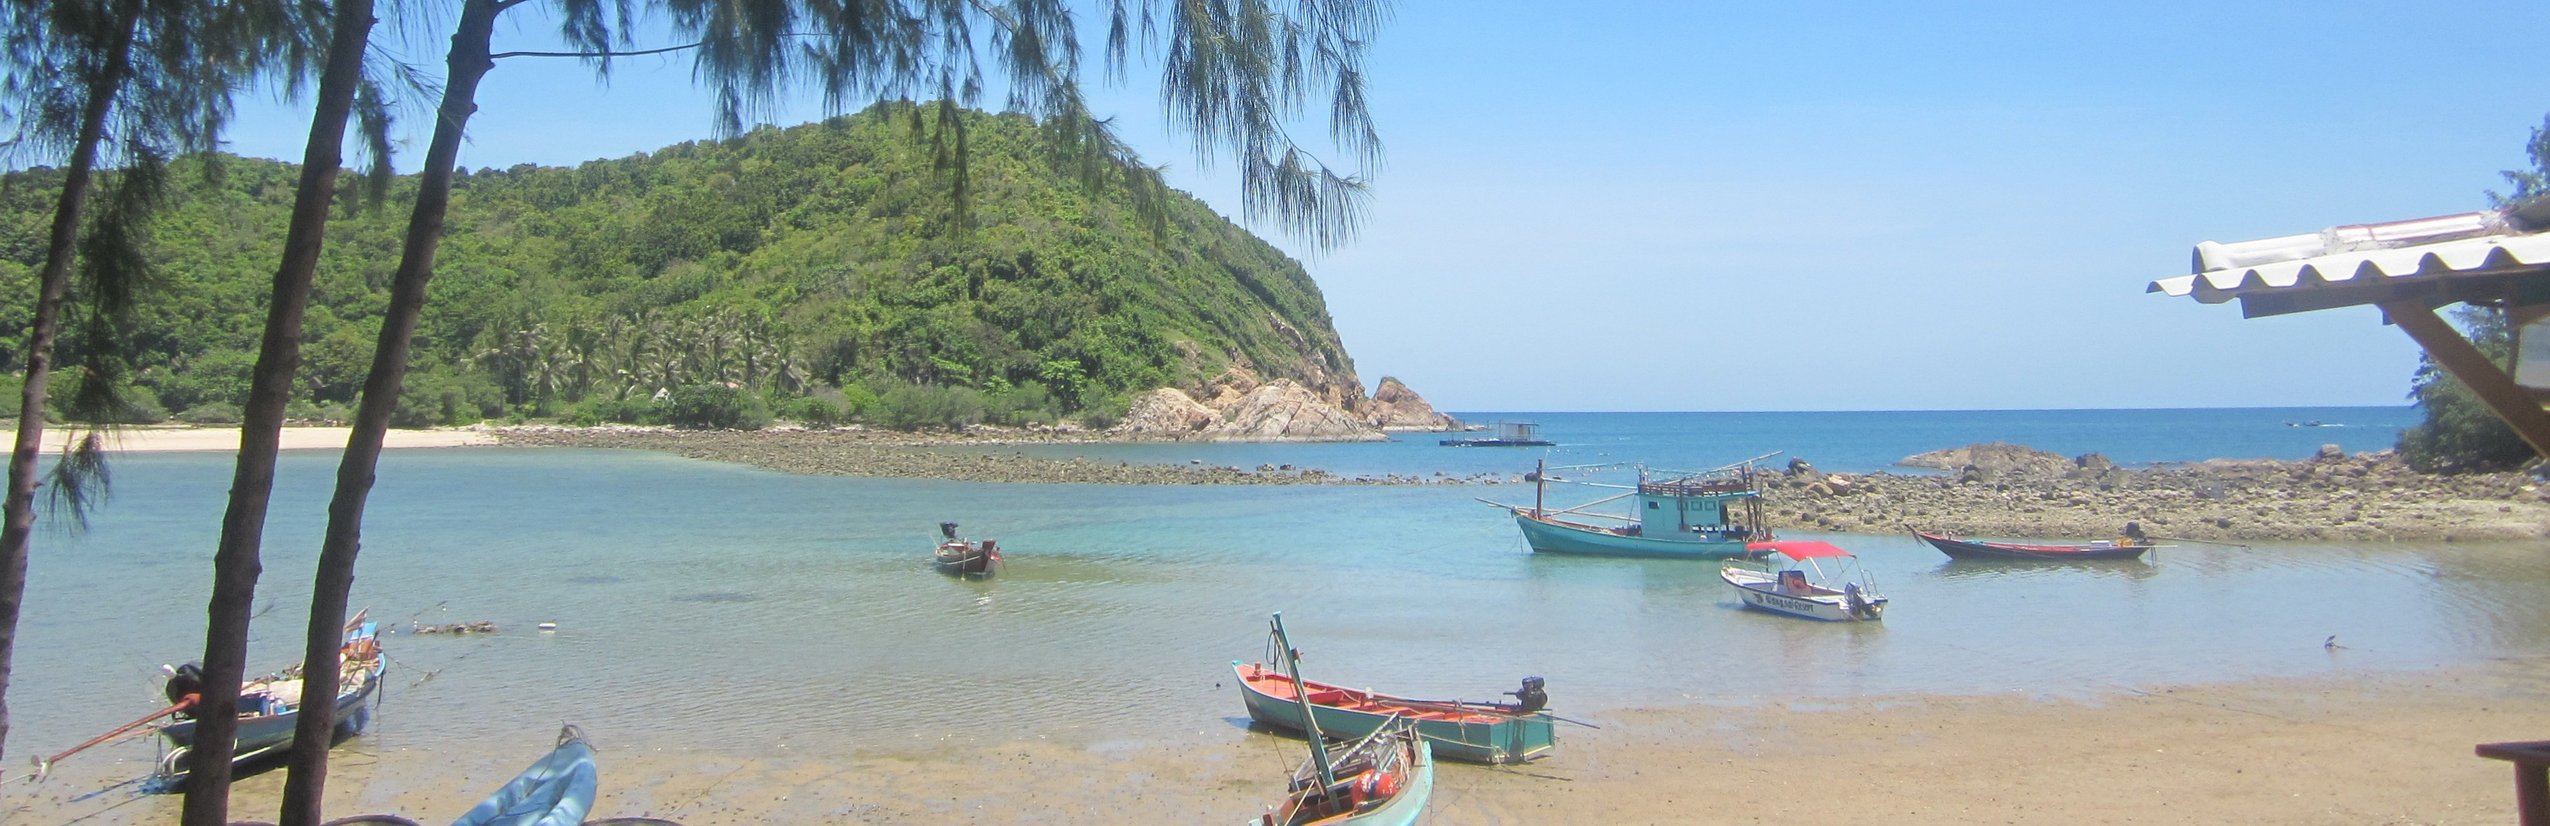 Vietnam Familienreise - Verlängerungsoptionen in Asien - For Family Reisen - Strand mit Booten